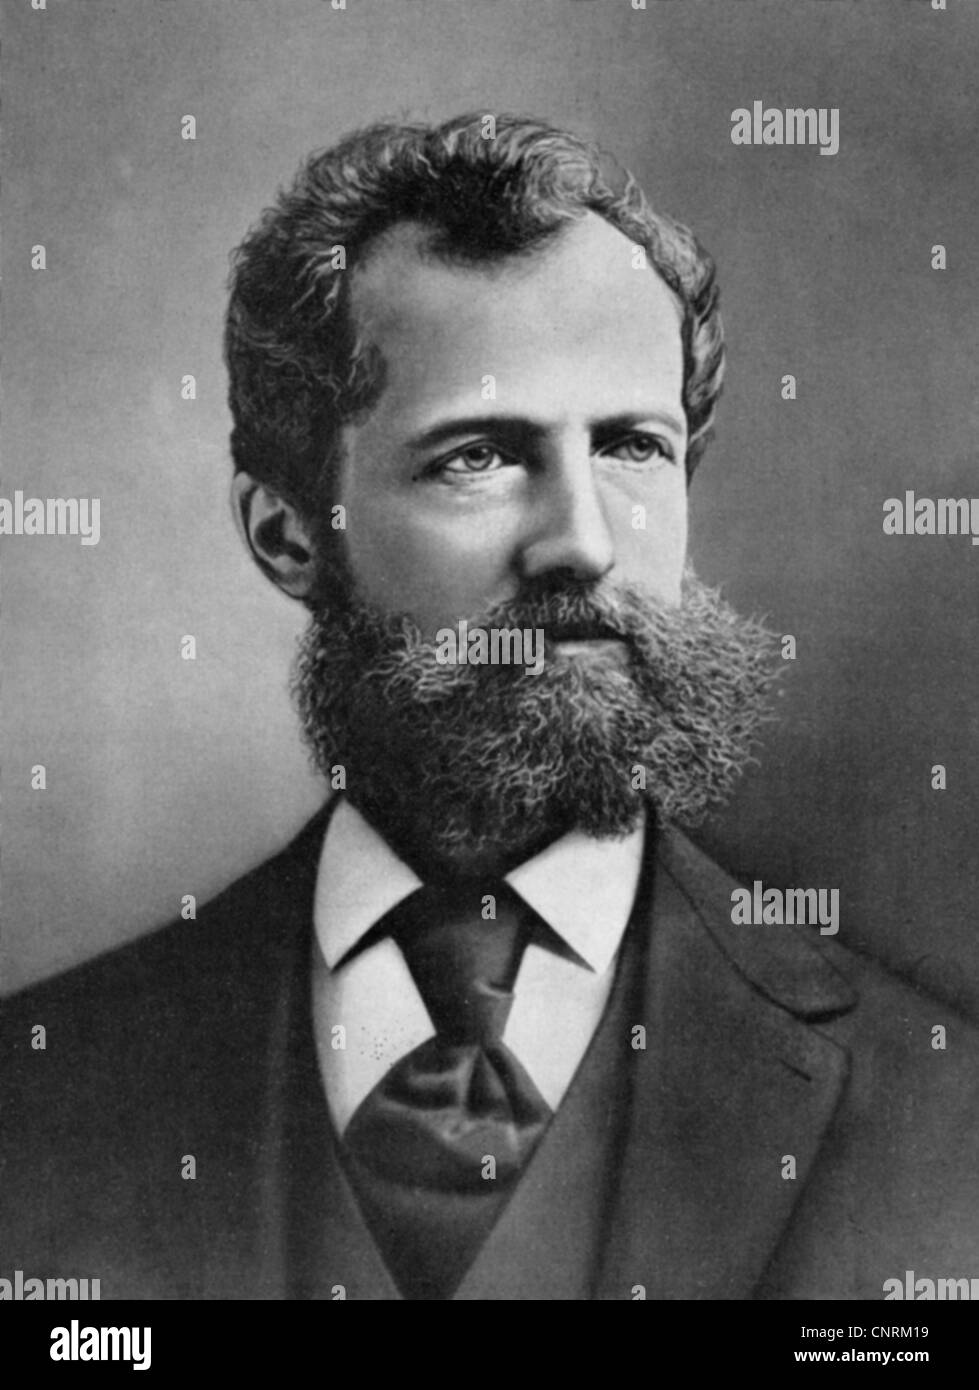 Mergenthaler, Ottmar, 11.5.1854 - 28.10.1899, deutscher Uhrmacher, Erfinder der Linotype-Setzmaschine, Porträt, Ende 19. Jh. Stockfoto